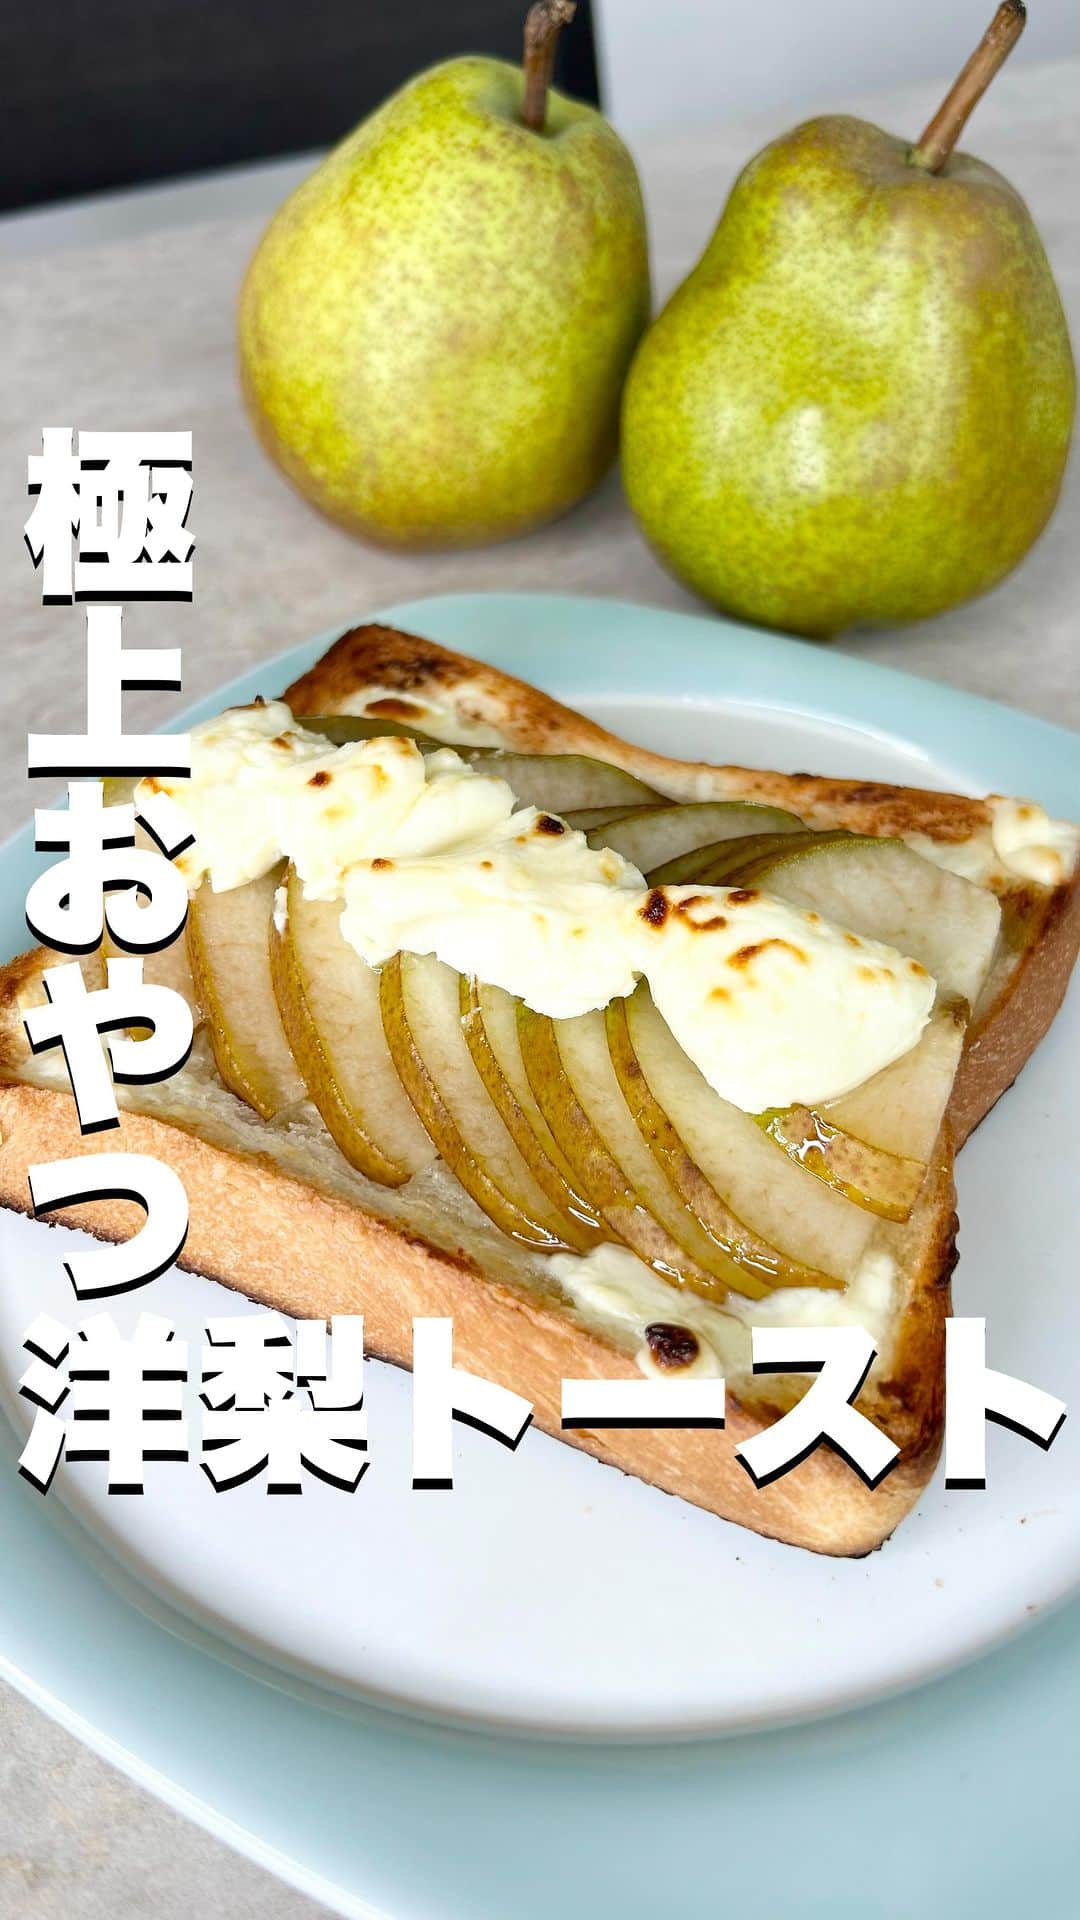 菅野広恵のインスタグラム：「@hiroesugano ←他の果物の豆知識はこちら  洋梨はアスパラギン酸を含み 疲労回復効果が期待できて… アラフォーの疲れた身体を 美味しく癒してくれる この時期私にとっては 欠かせない果物の1つ🤭✨  洋梨は生でもトロける食感で 最高に美味しいけど… 加熱してもこれまた、幸せな気持ちに してくれる果物なのです🤭❤️  なので、このトーストを 『幸せの洋梨トースト』と名付けよ🍞🍐💕  作り方は本当簡単！ ①切って ②のせて ③焼く 3ステップ‼︎  🔸作り方 1.洋梨を切ります。 ↑私は面倒だったので皮ごといきましたが、皮が気になる方はむいてからでも🙆‍♀️  2.クリームチーズをパンにぬります。 ↑私は塗りましたが、ぬらなくてもok  3.洋梨をパンにのせます。  4.クリームチーズをのせます。  5.トースターに5分程度  6.焼けたら蜂蜜をかけて完成✨  ラフランスは11月ごろまでになりますが、 12月頃まで洋梨は違う品種でもまだ 登場してきますので、朝ごはんやおやつに おすすめです♡ ……………………………………………… ・野菜ソムリエプロ ・子供に食べさせたい 野菜・果物を産地直送でお届けしている @vegetaiment 代表　ひろえです🍎🍐🥕 今回は、幸せ洋梨トースト🍐 お届けしました🤭 ………………………………………………  生産者さんたちが作る美味しい果物を より美味しく食べれますように😊✨  #野菜ソムリエプロ　#生活の知恵　#旬の食材  #旬の果物  #果物好き　#食べて綺麗になる　 #パンレシピ　#トーストレシピ  #トーストアレンジ  #ラフランス」